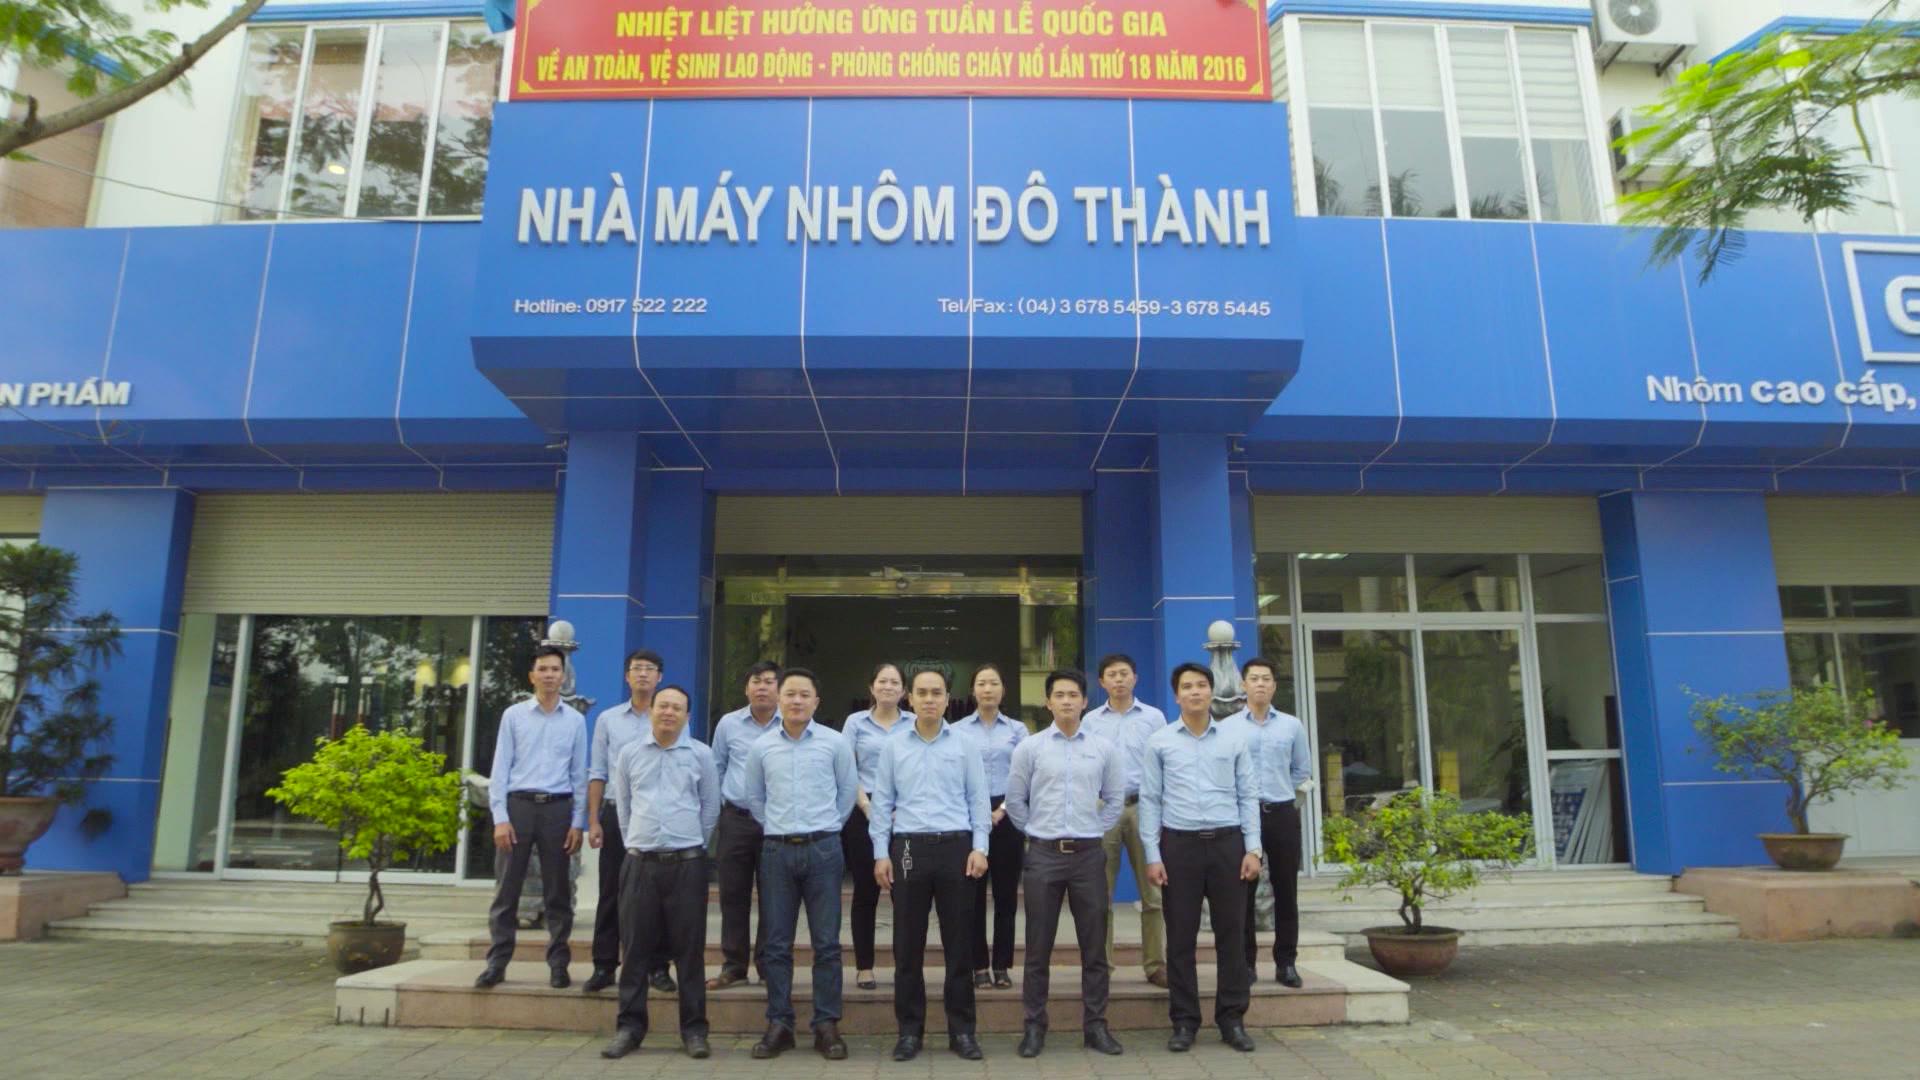 Latest Công Ty Cổ Phần Nhôm Đô Thành employment/hiring with high salary & attractive benefits